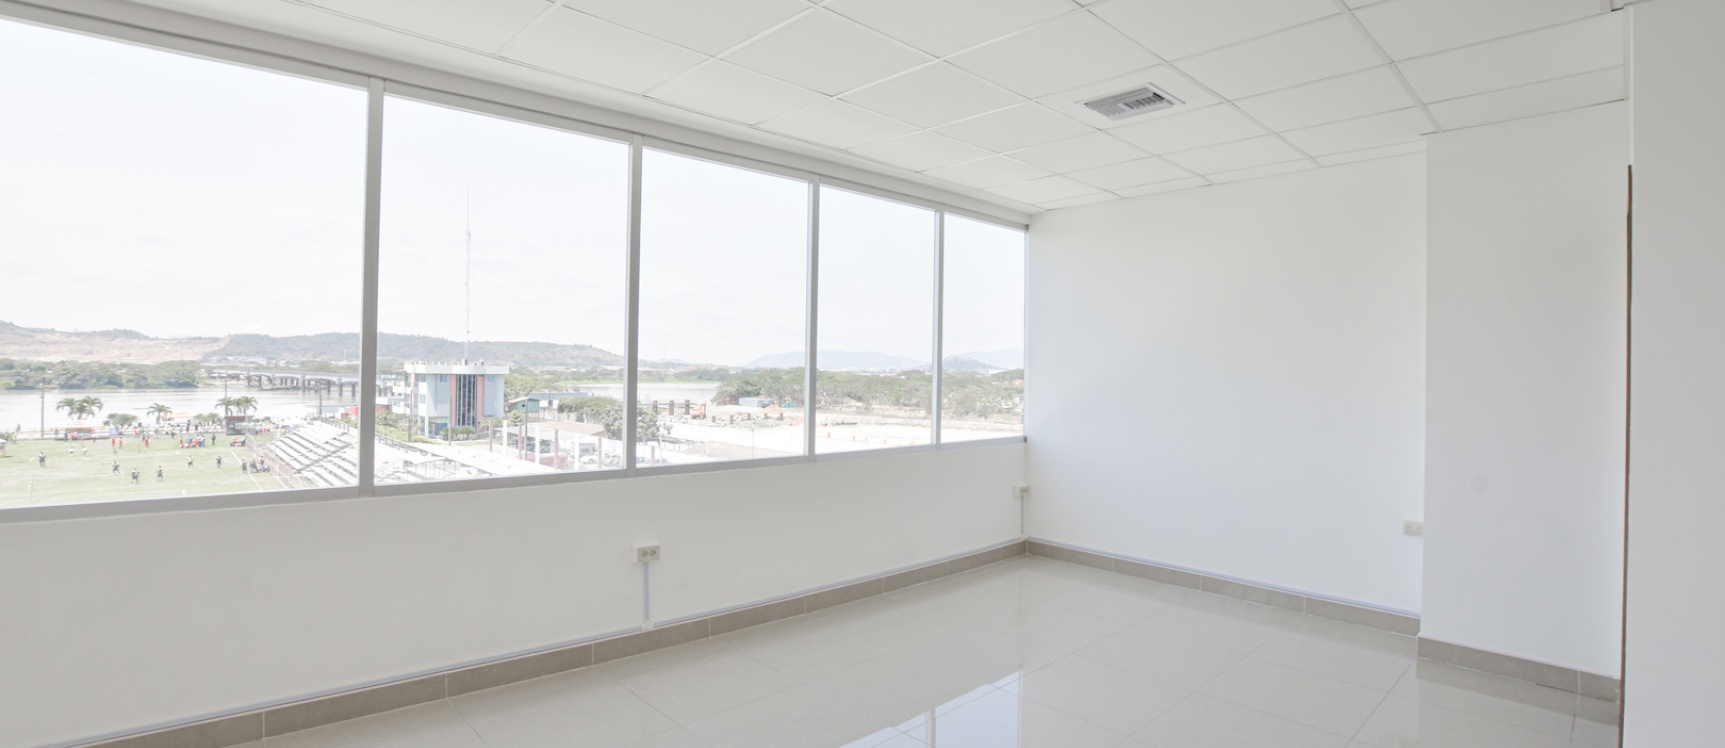 GeoBienes - Oficina en alquiler Edificio River Plaza, Norte de Guayaquil  - Plusvalia Guayaquil Casas de venta y alquiler Inmobiliaria Ecuador